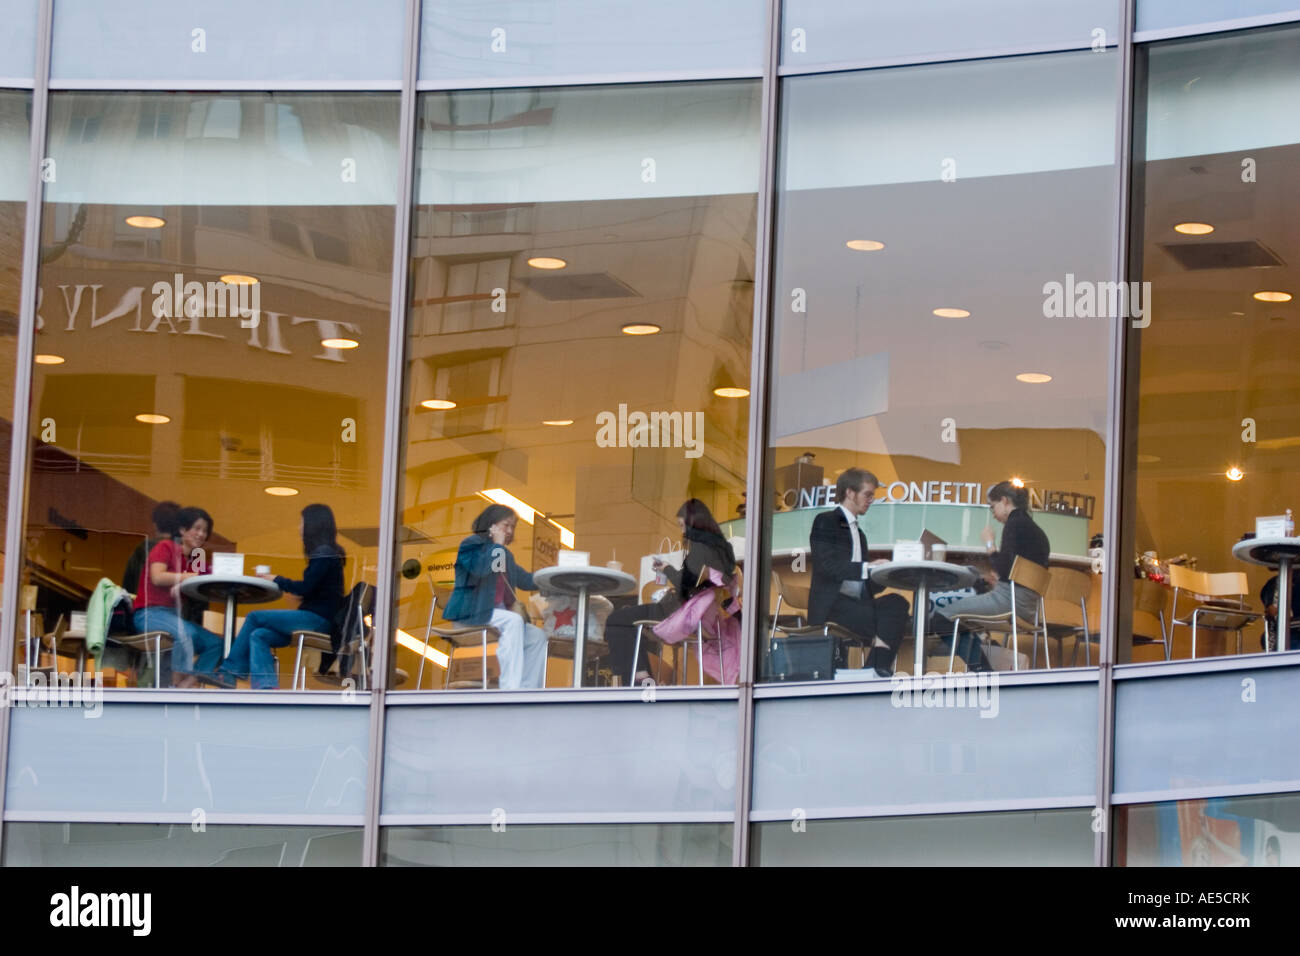 Les personnes qui prennent une pause de shopping au grand magasin cafe comme vu de l'extérieur par l'intermédiaire de windows Banque D'Images